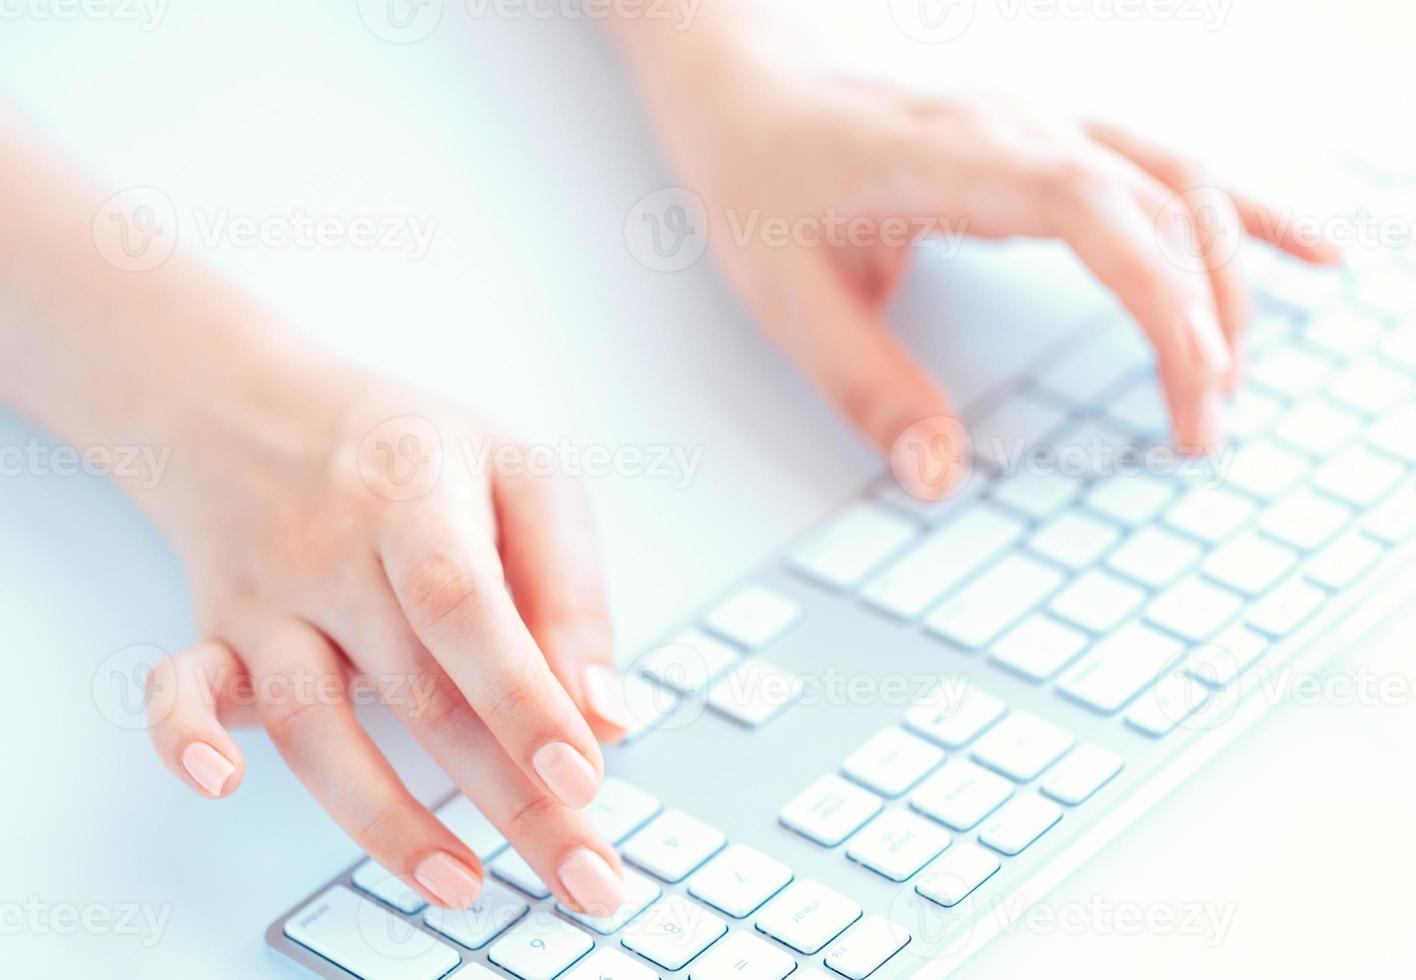 mains féminines ou employée de bureau tapant sur le clavier photo